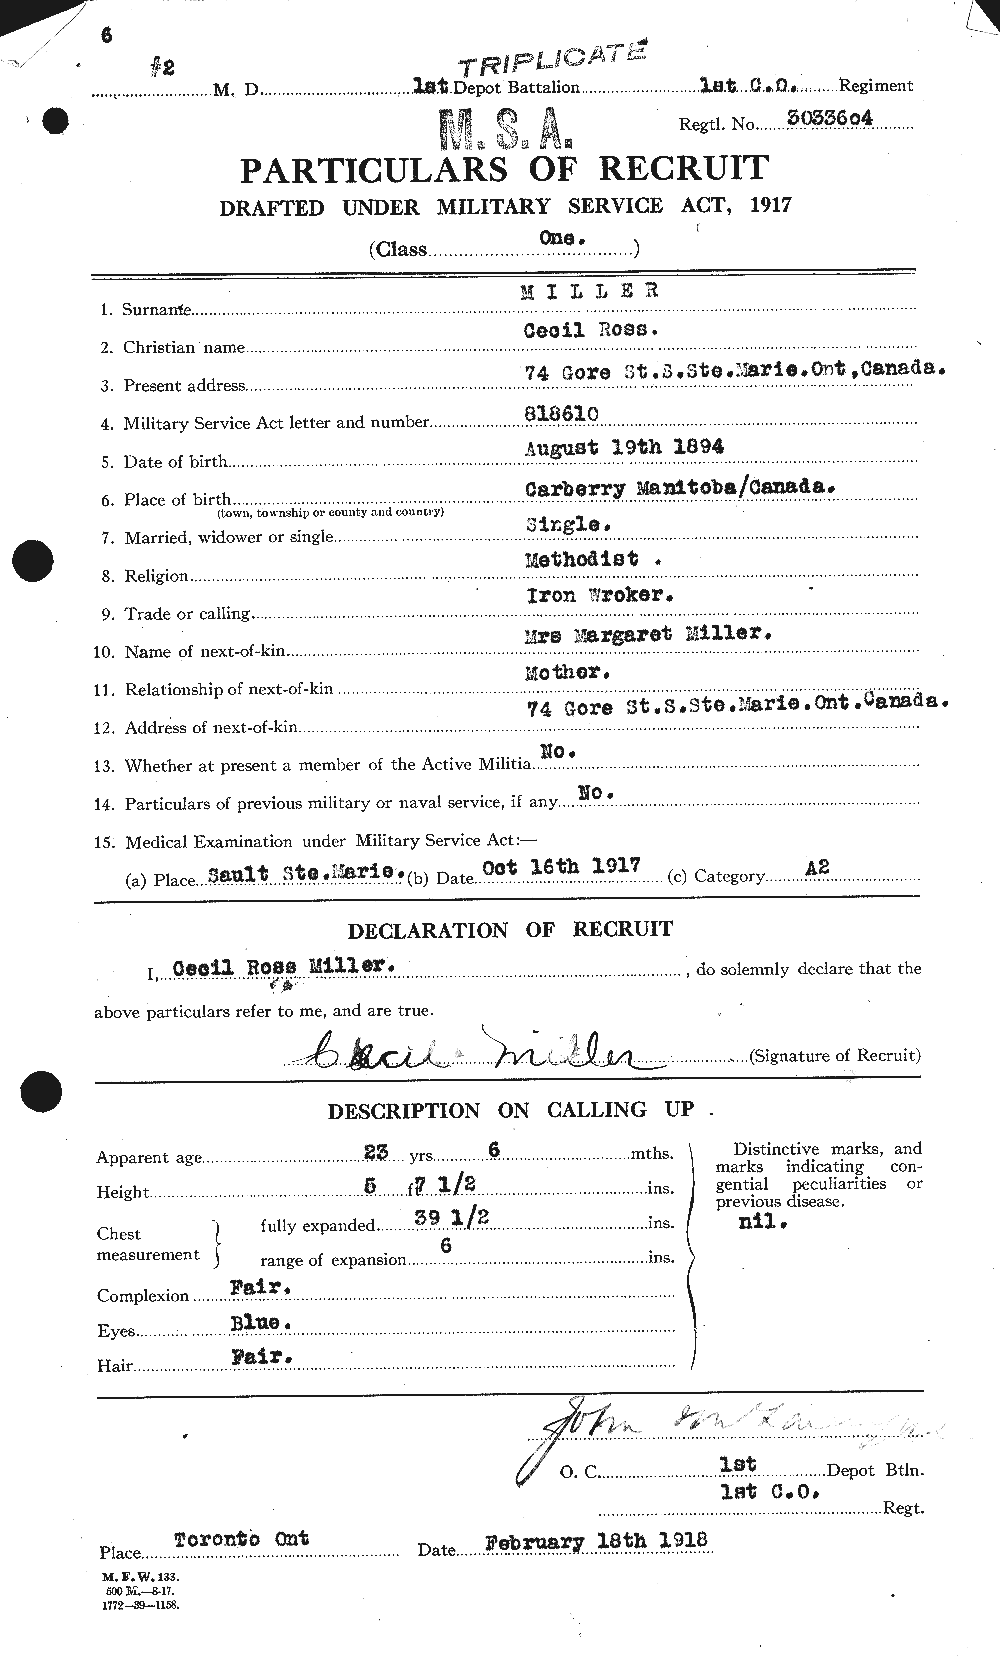 Dossiers du Personnel de la Première Guerre mondiale - CEC 498776a